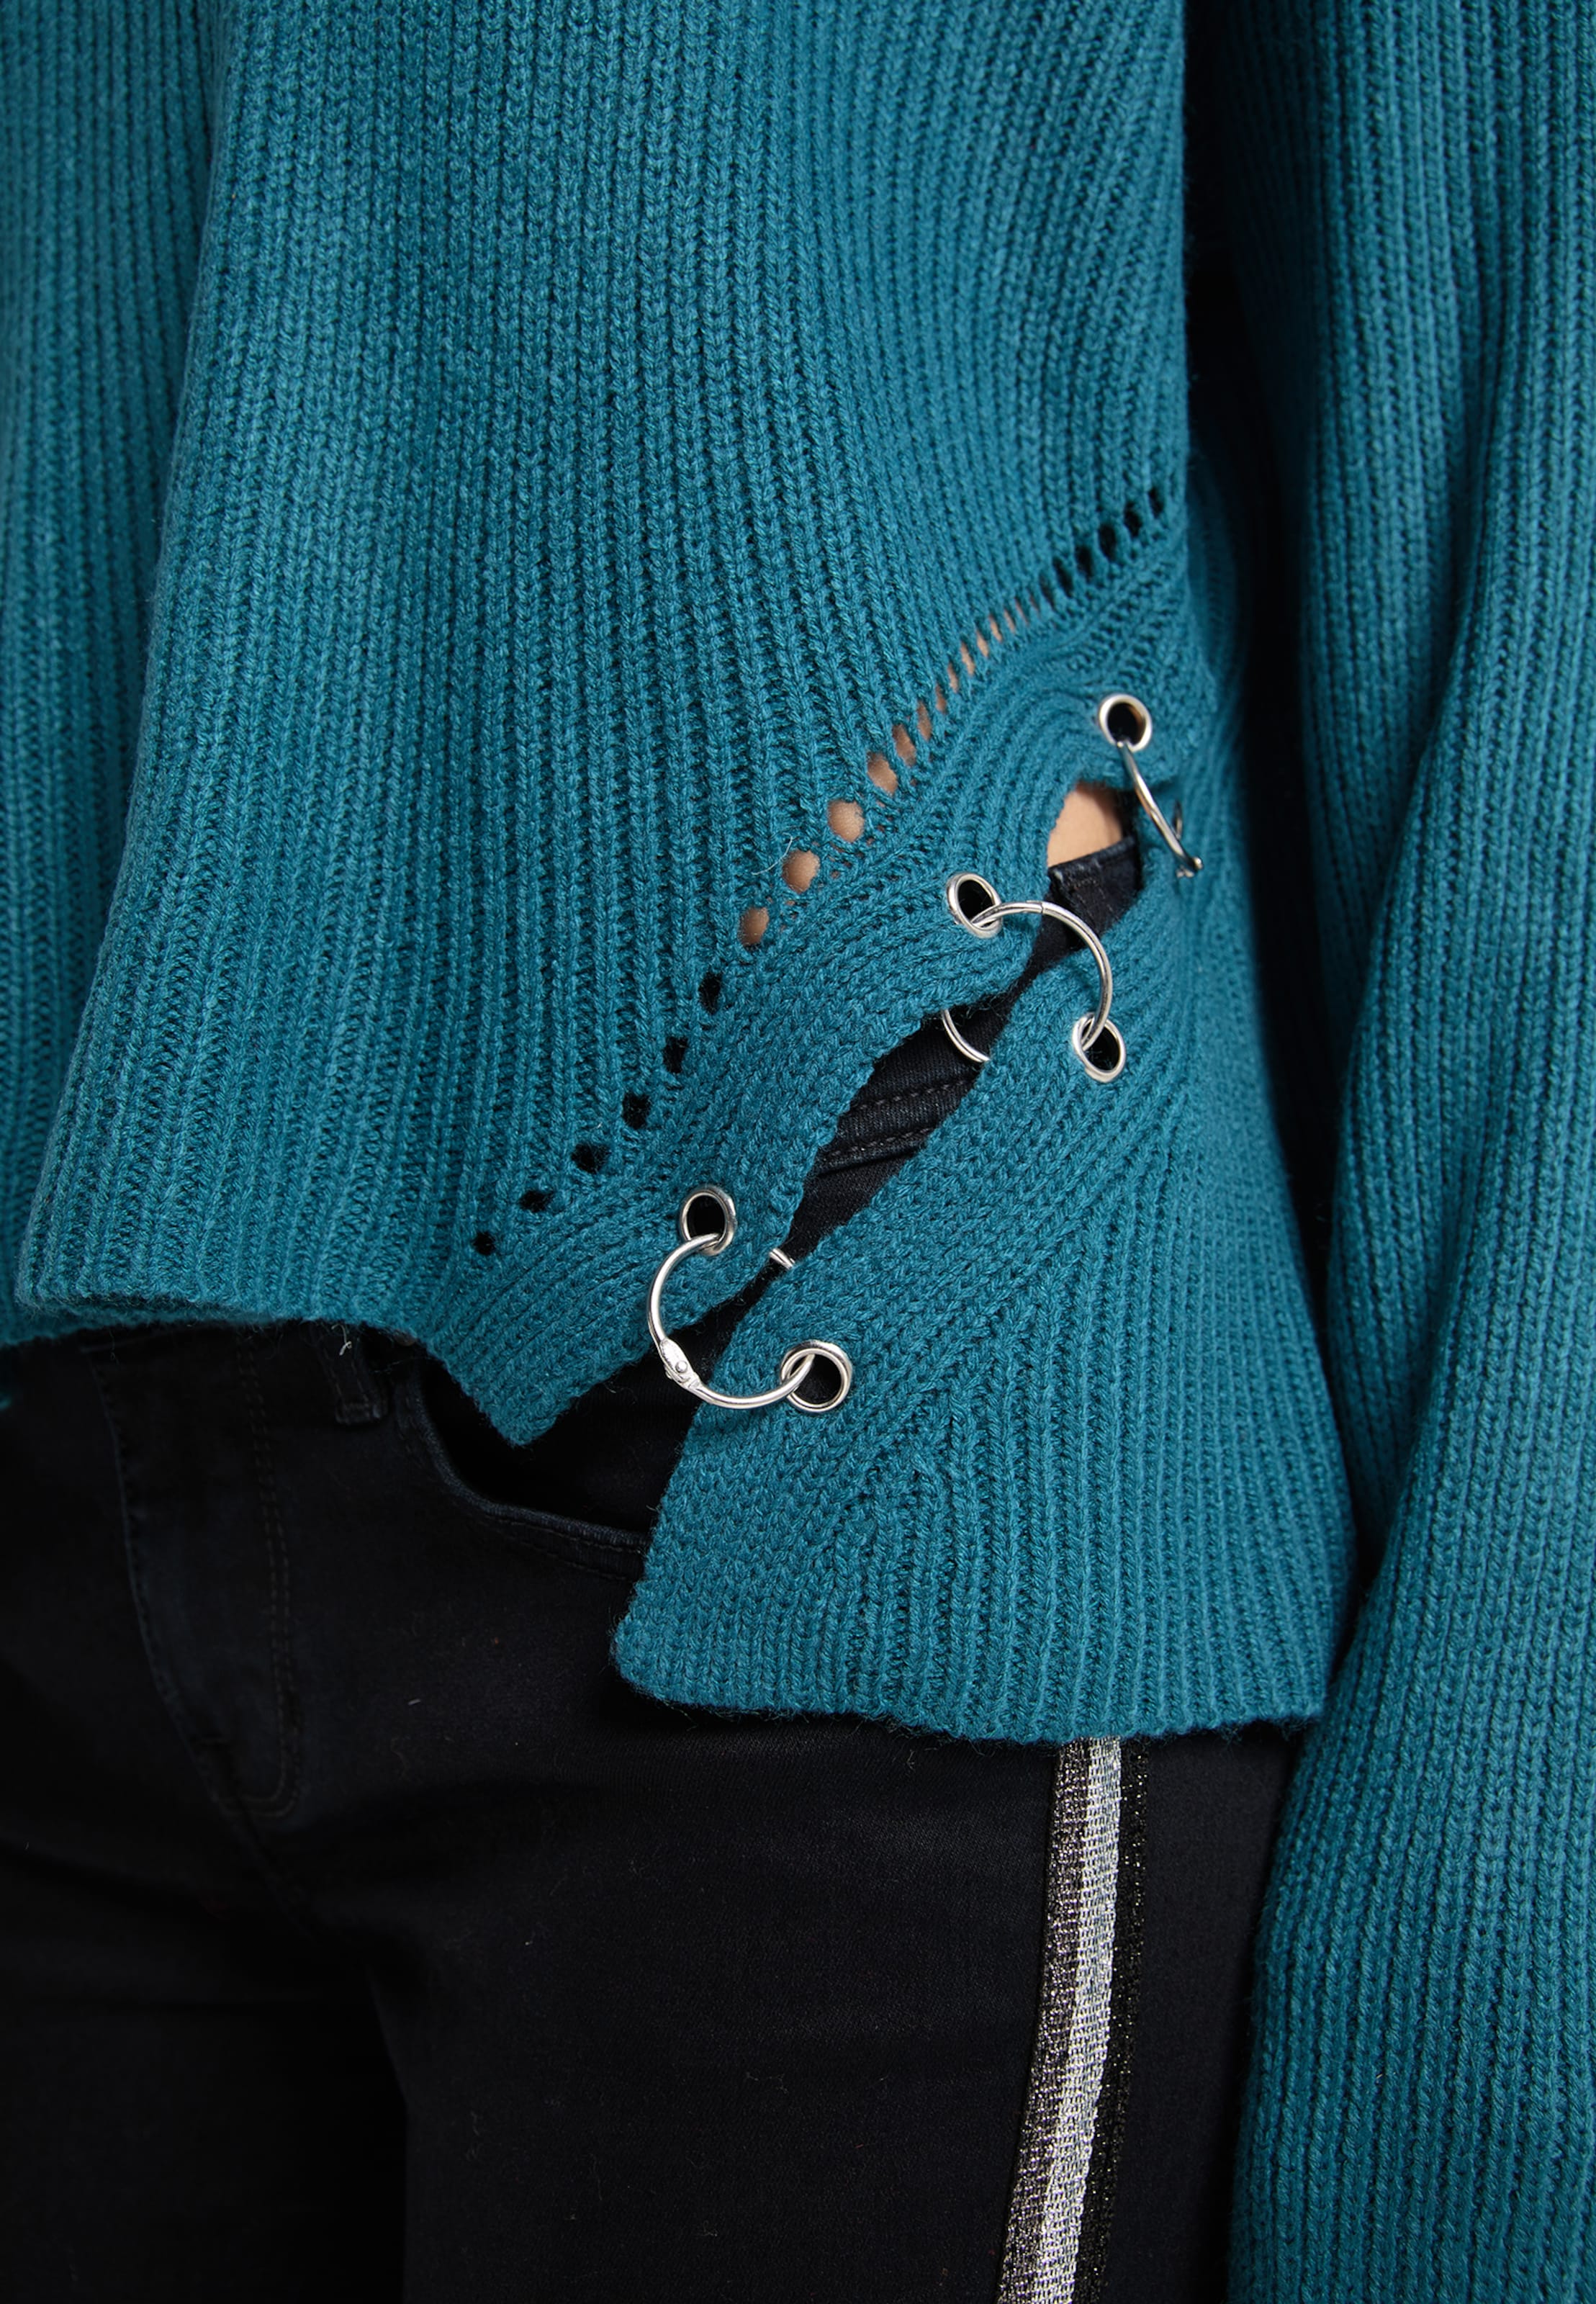 Frauen Pullover & Strick myMo ROCKS Pullover in Blau - DL06149